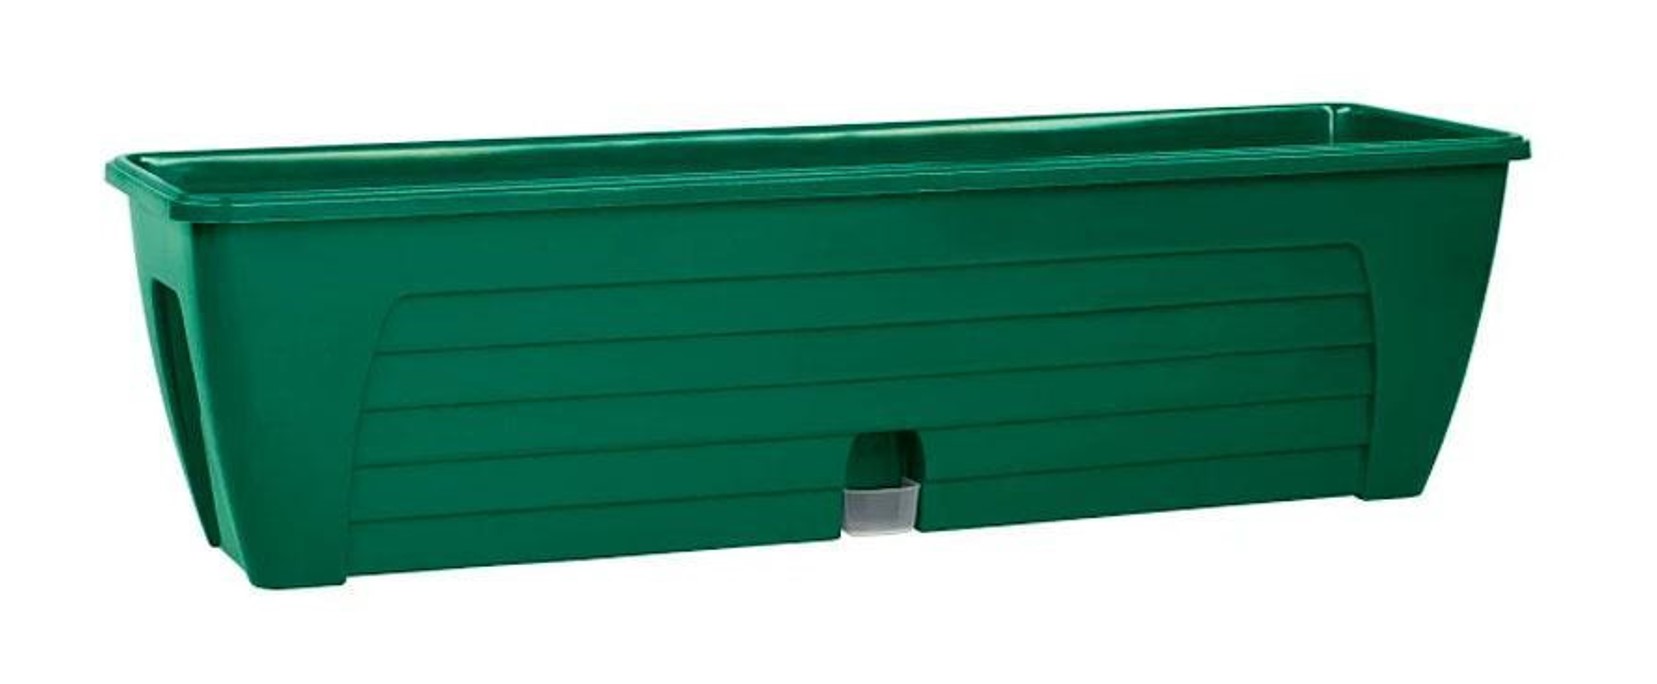 Ящик балконный зеленый Лидо